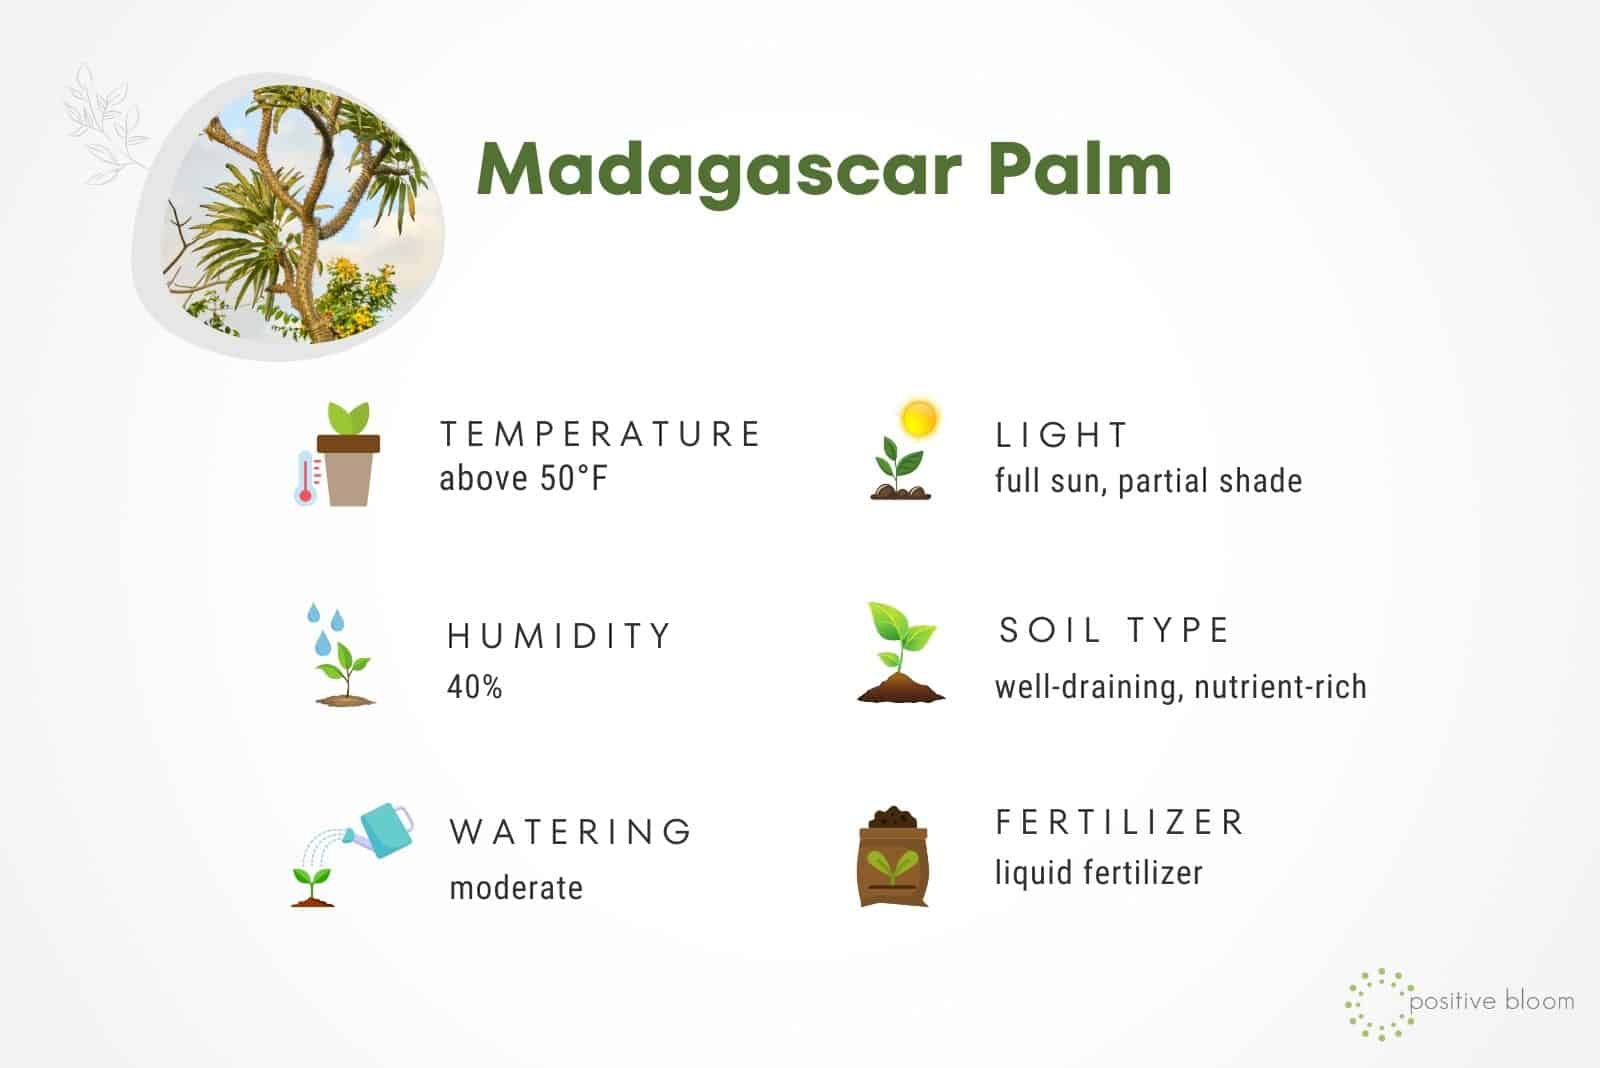 Madagascar Palm care guide